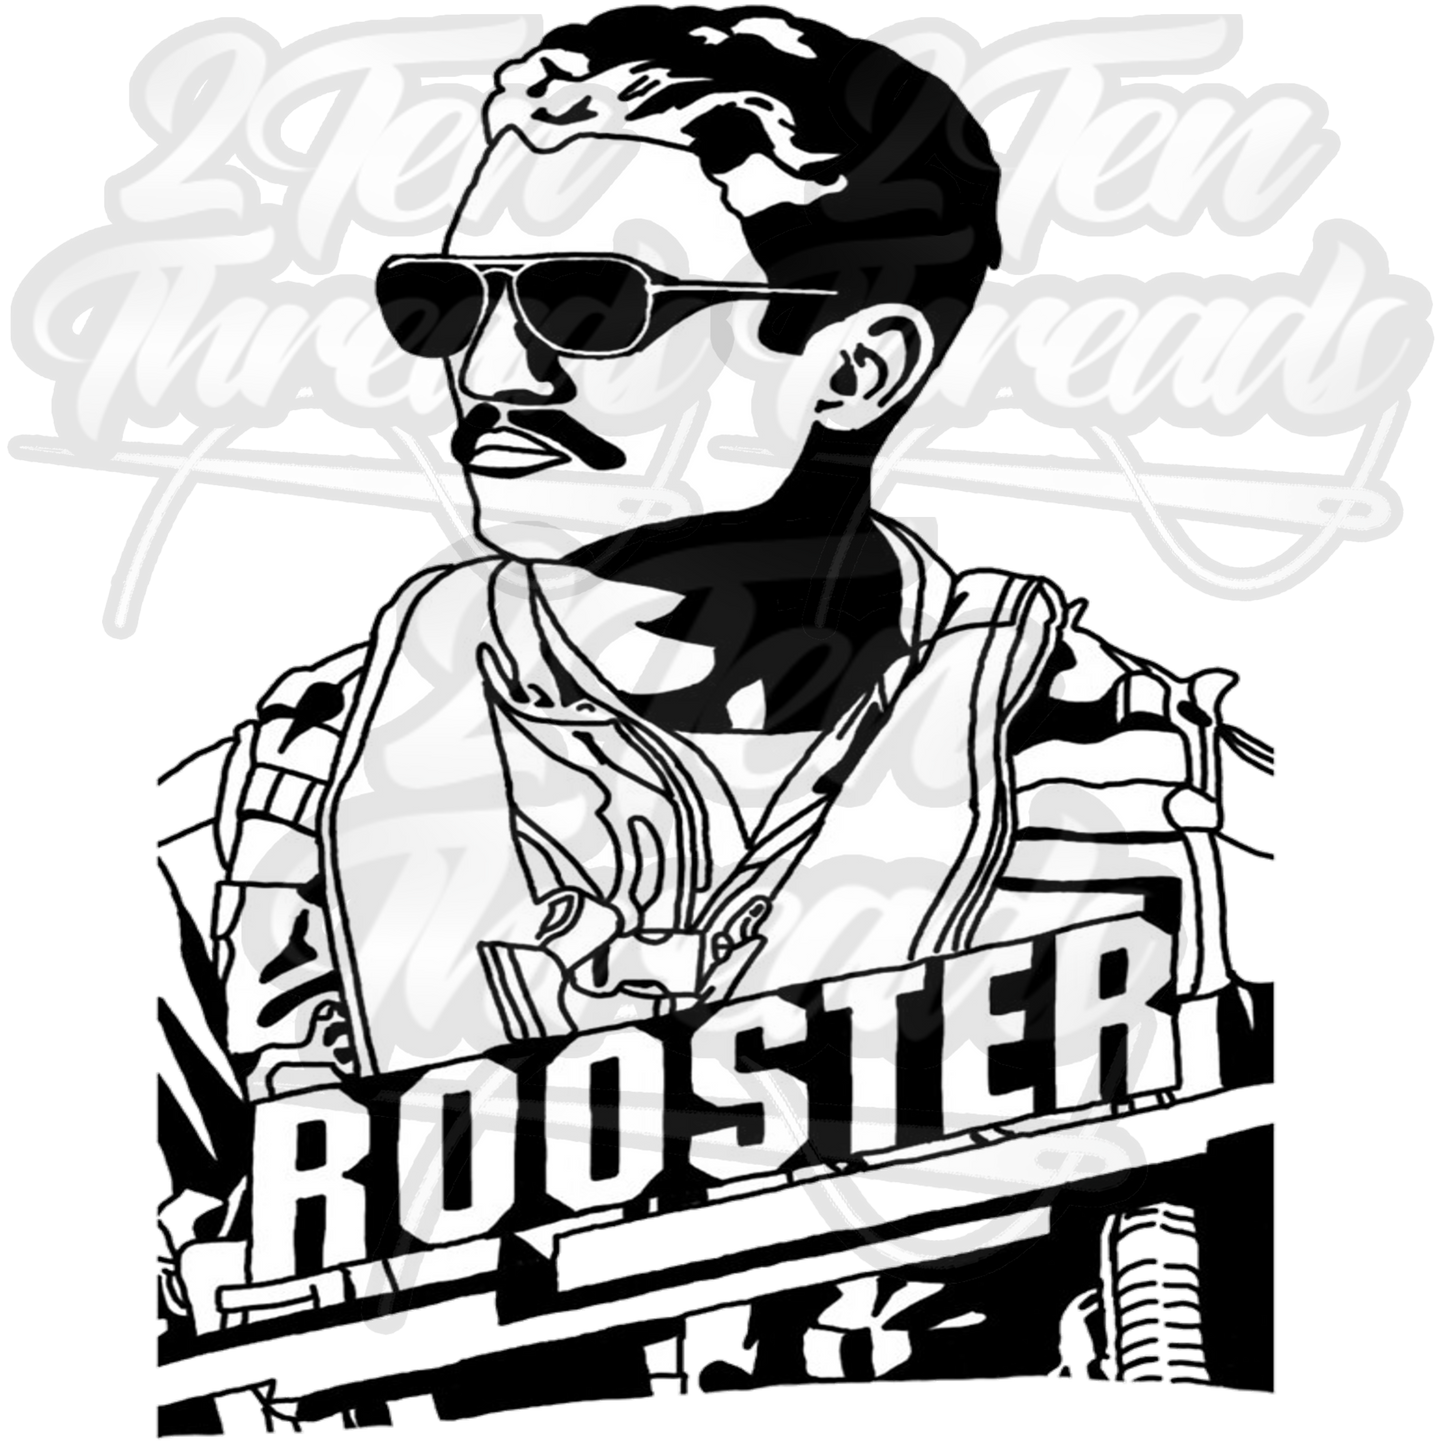 Topgun Rooster Shirt